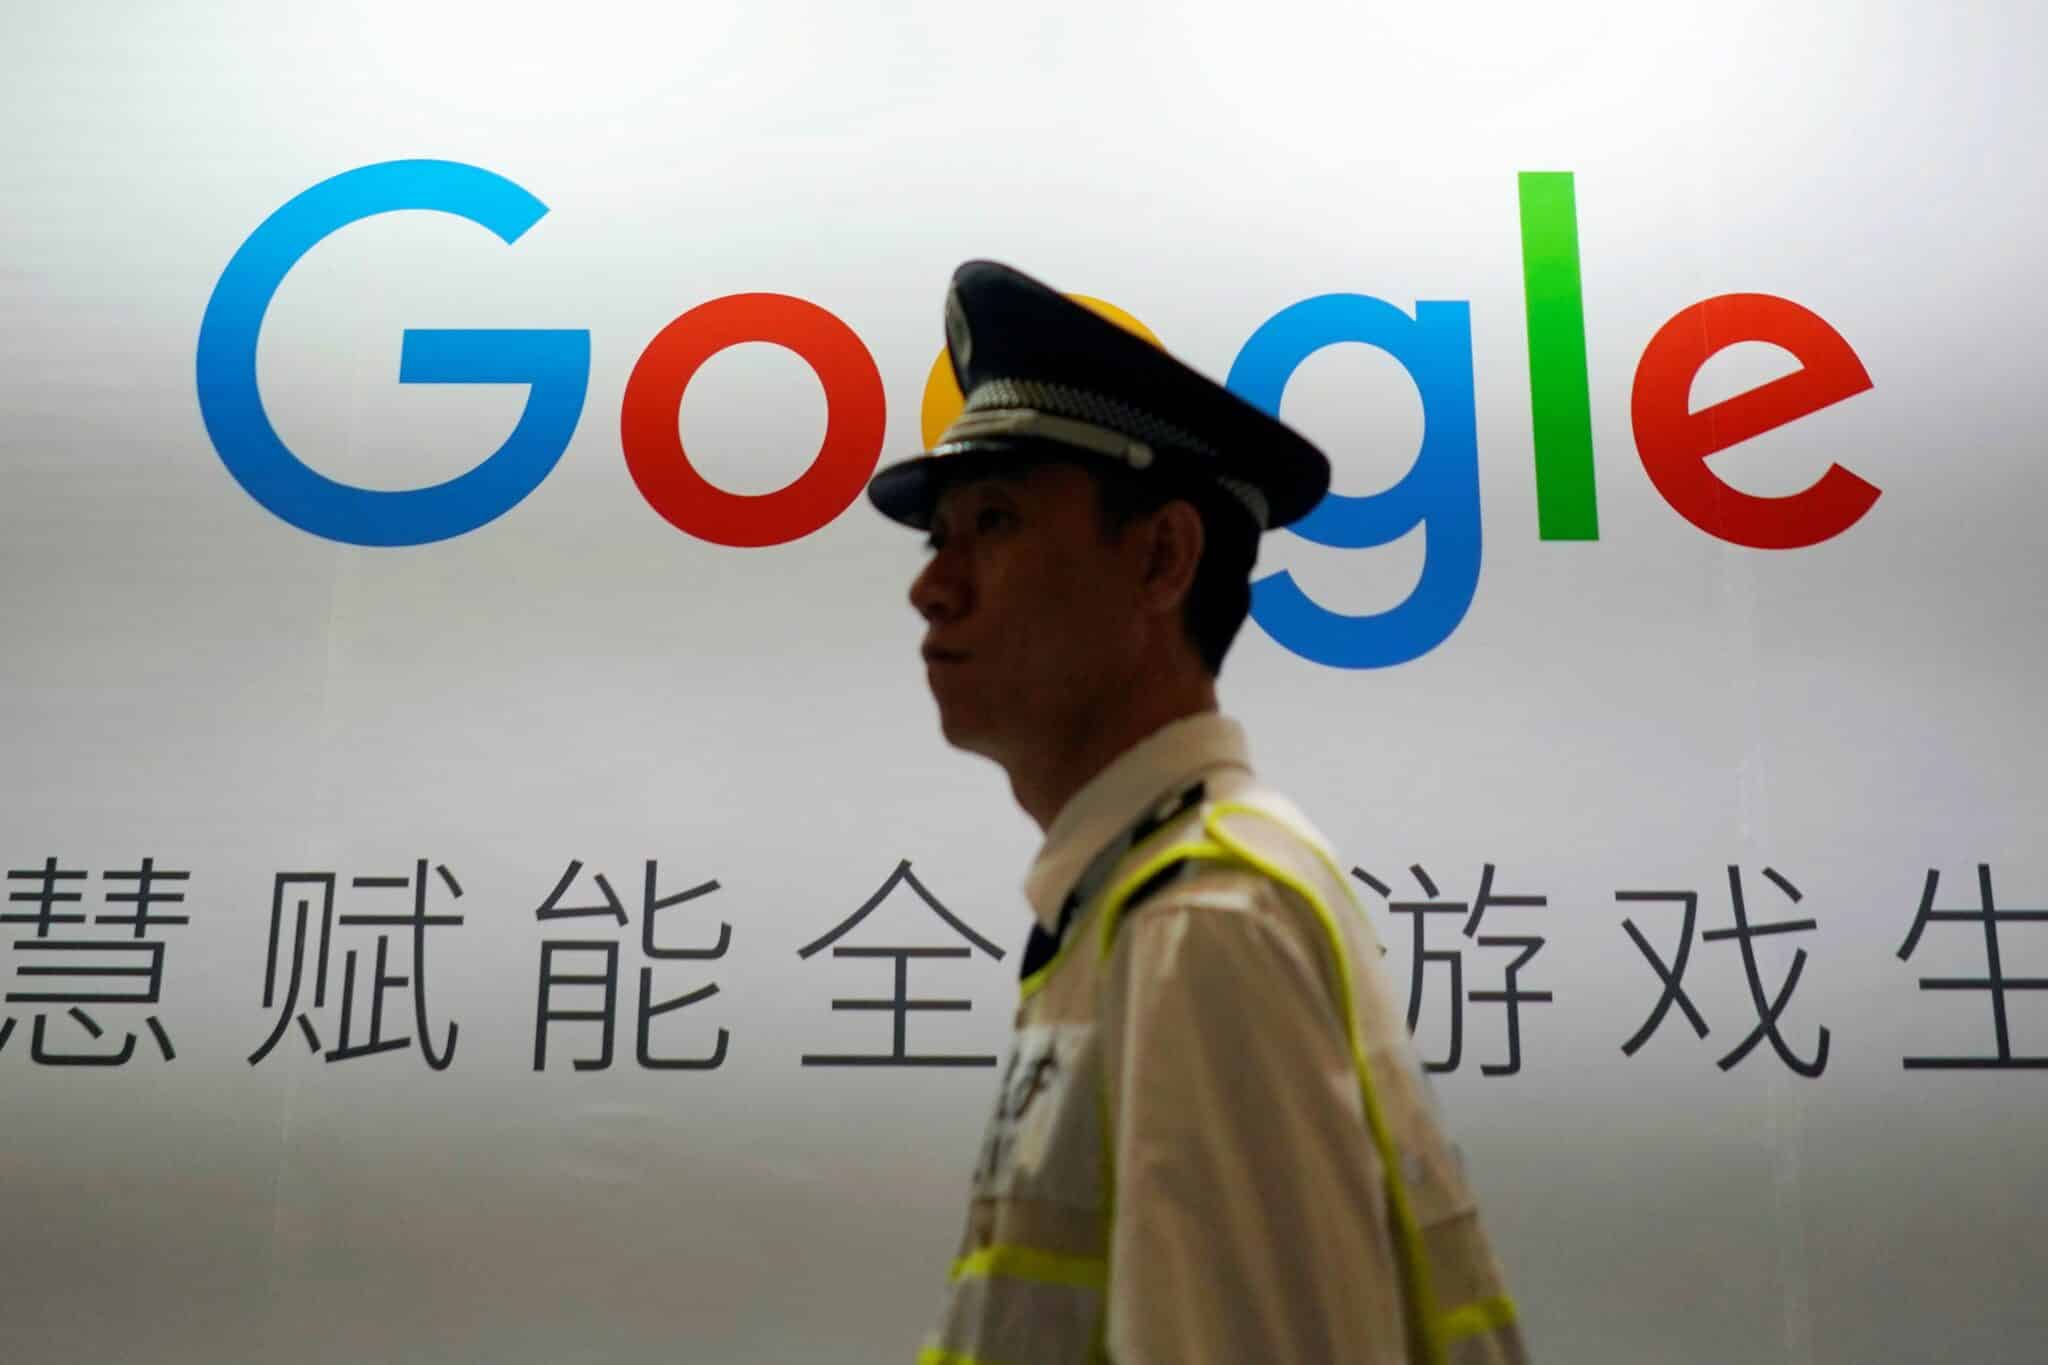 الصين ترحب بعودة جوجل بشرط امتثالها لقانون الرقابة